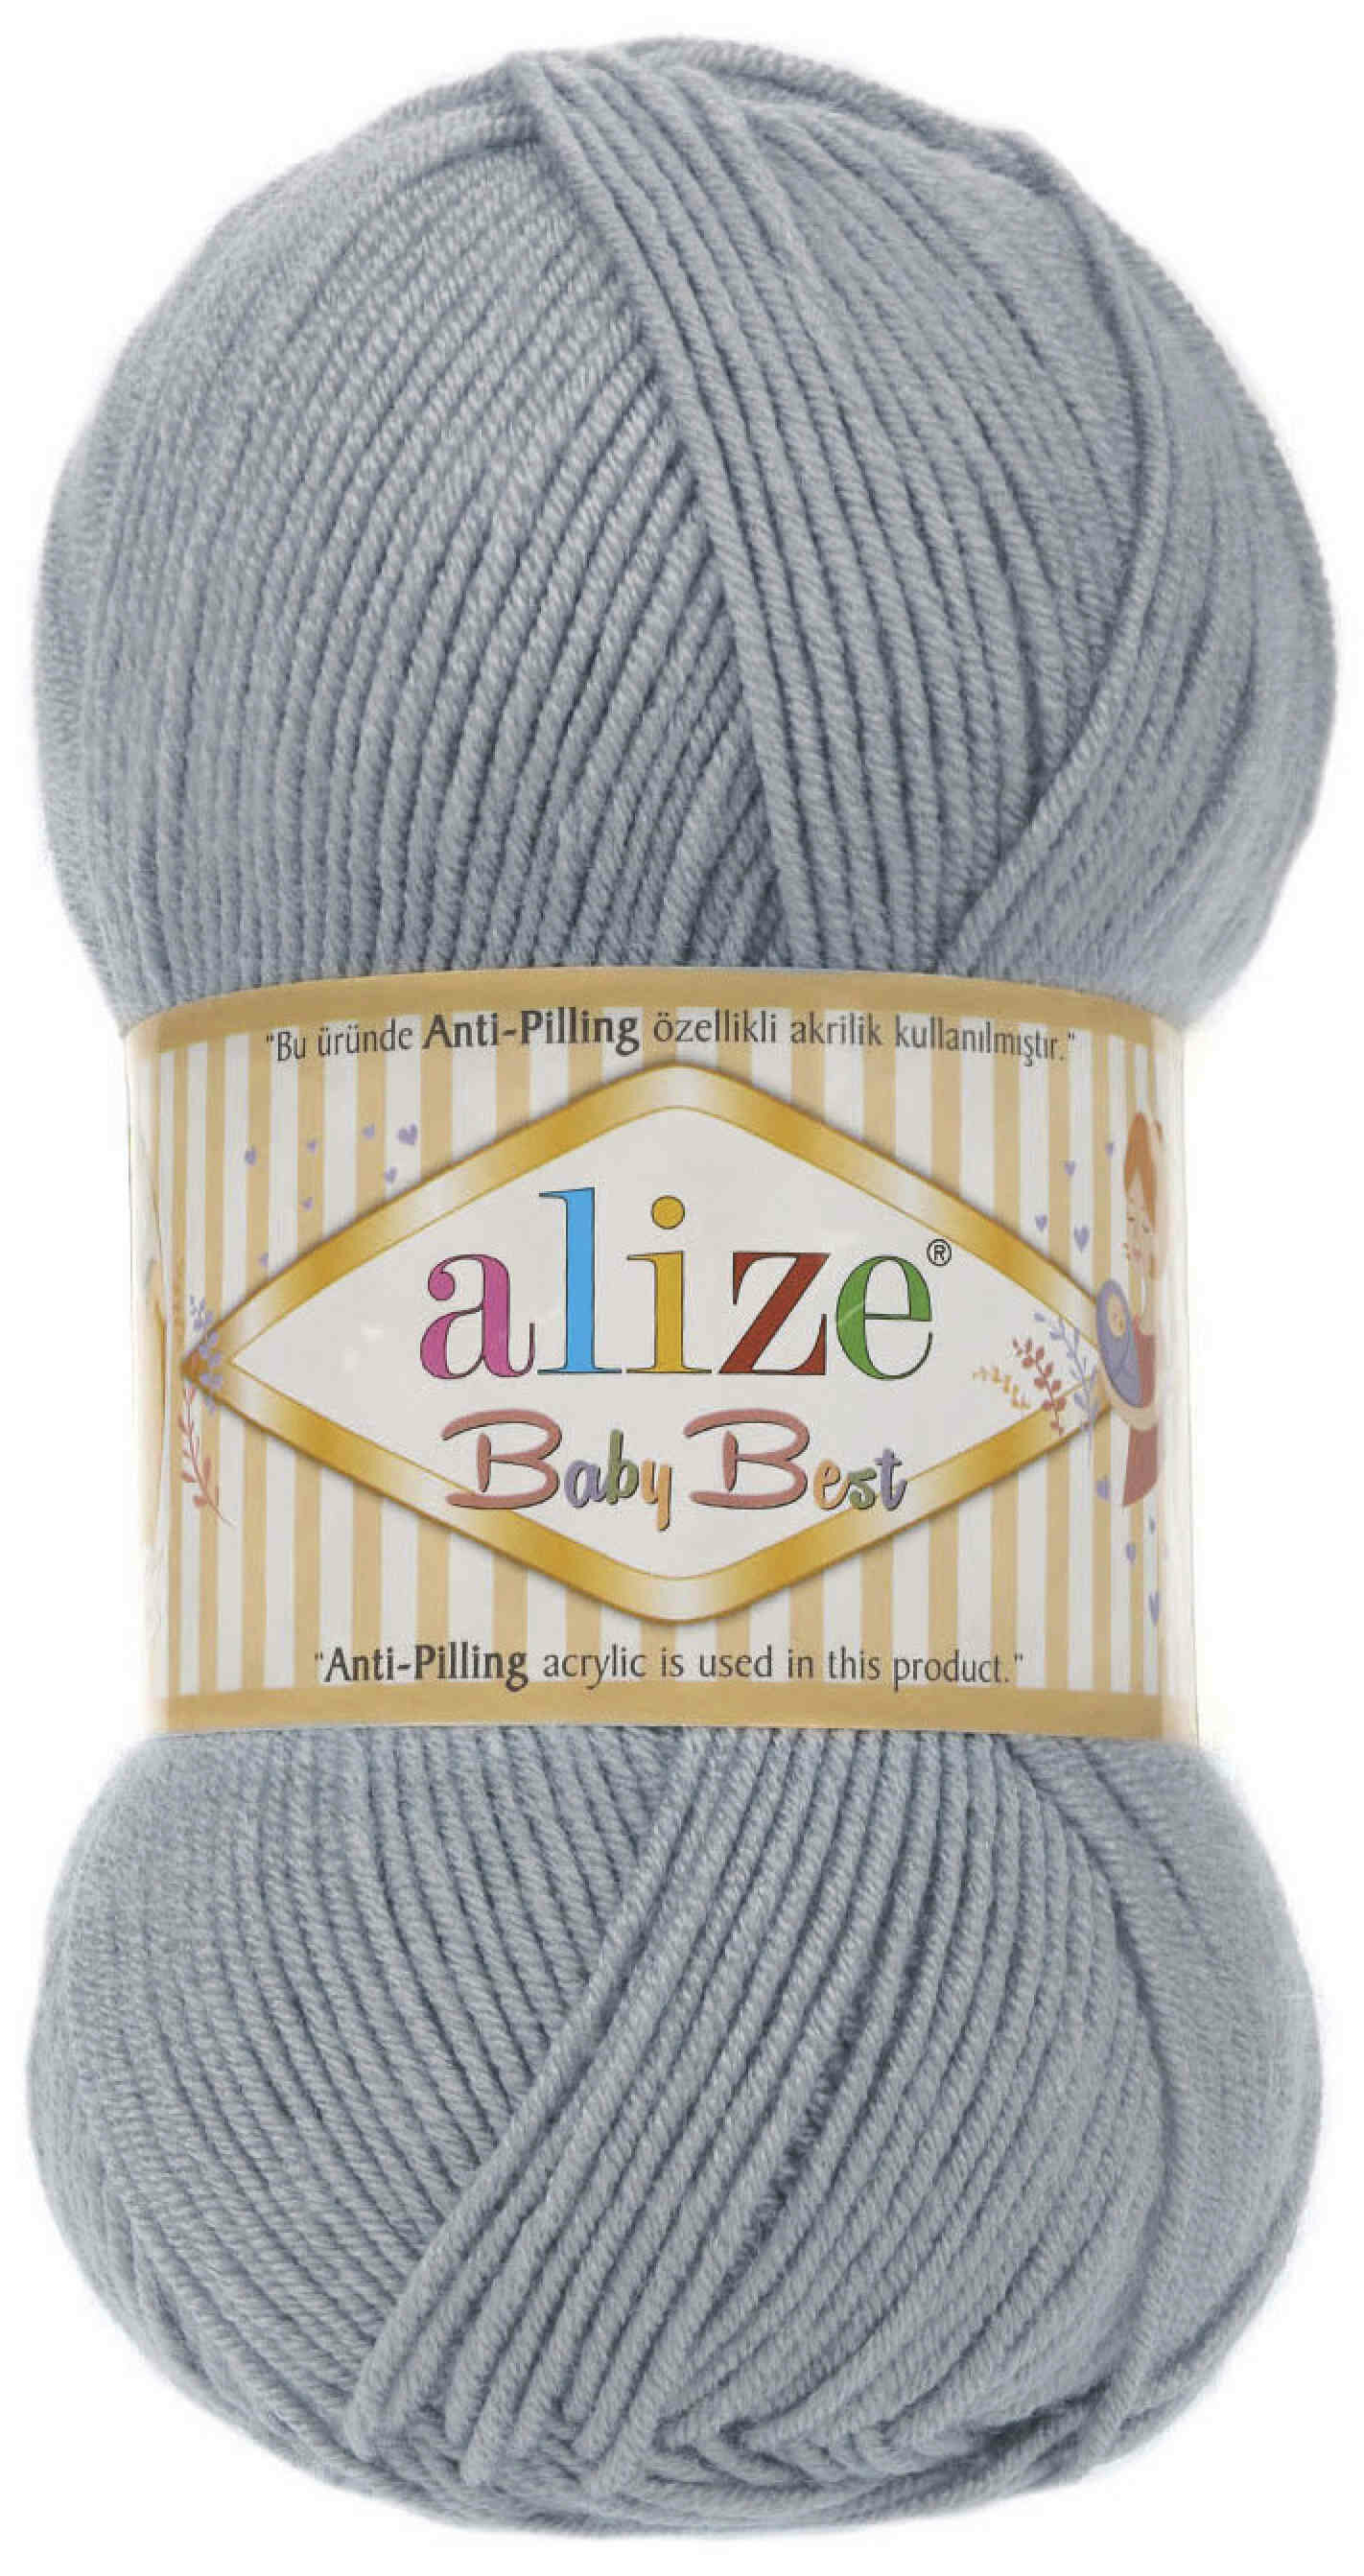 Пряжа Alize Baby best серый (119), 90%акрил/10%бамбук, 240м, 100г, 2шт